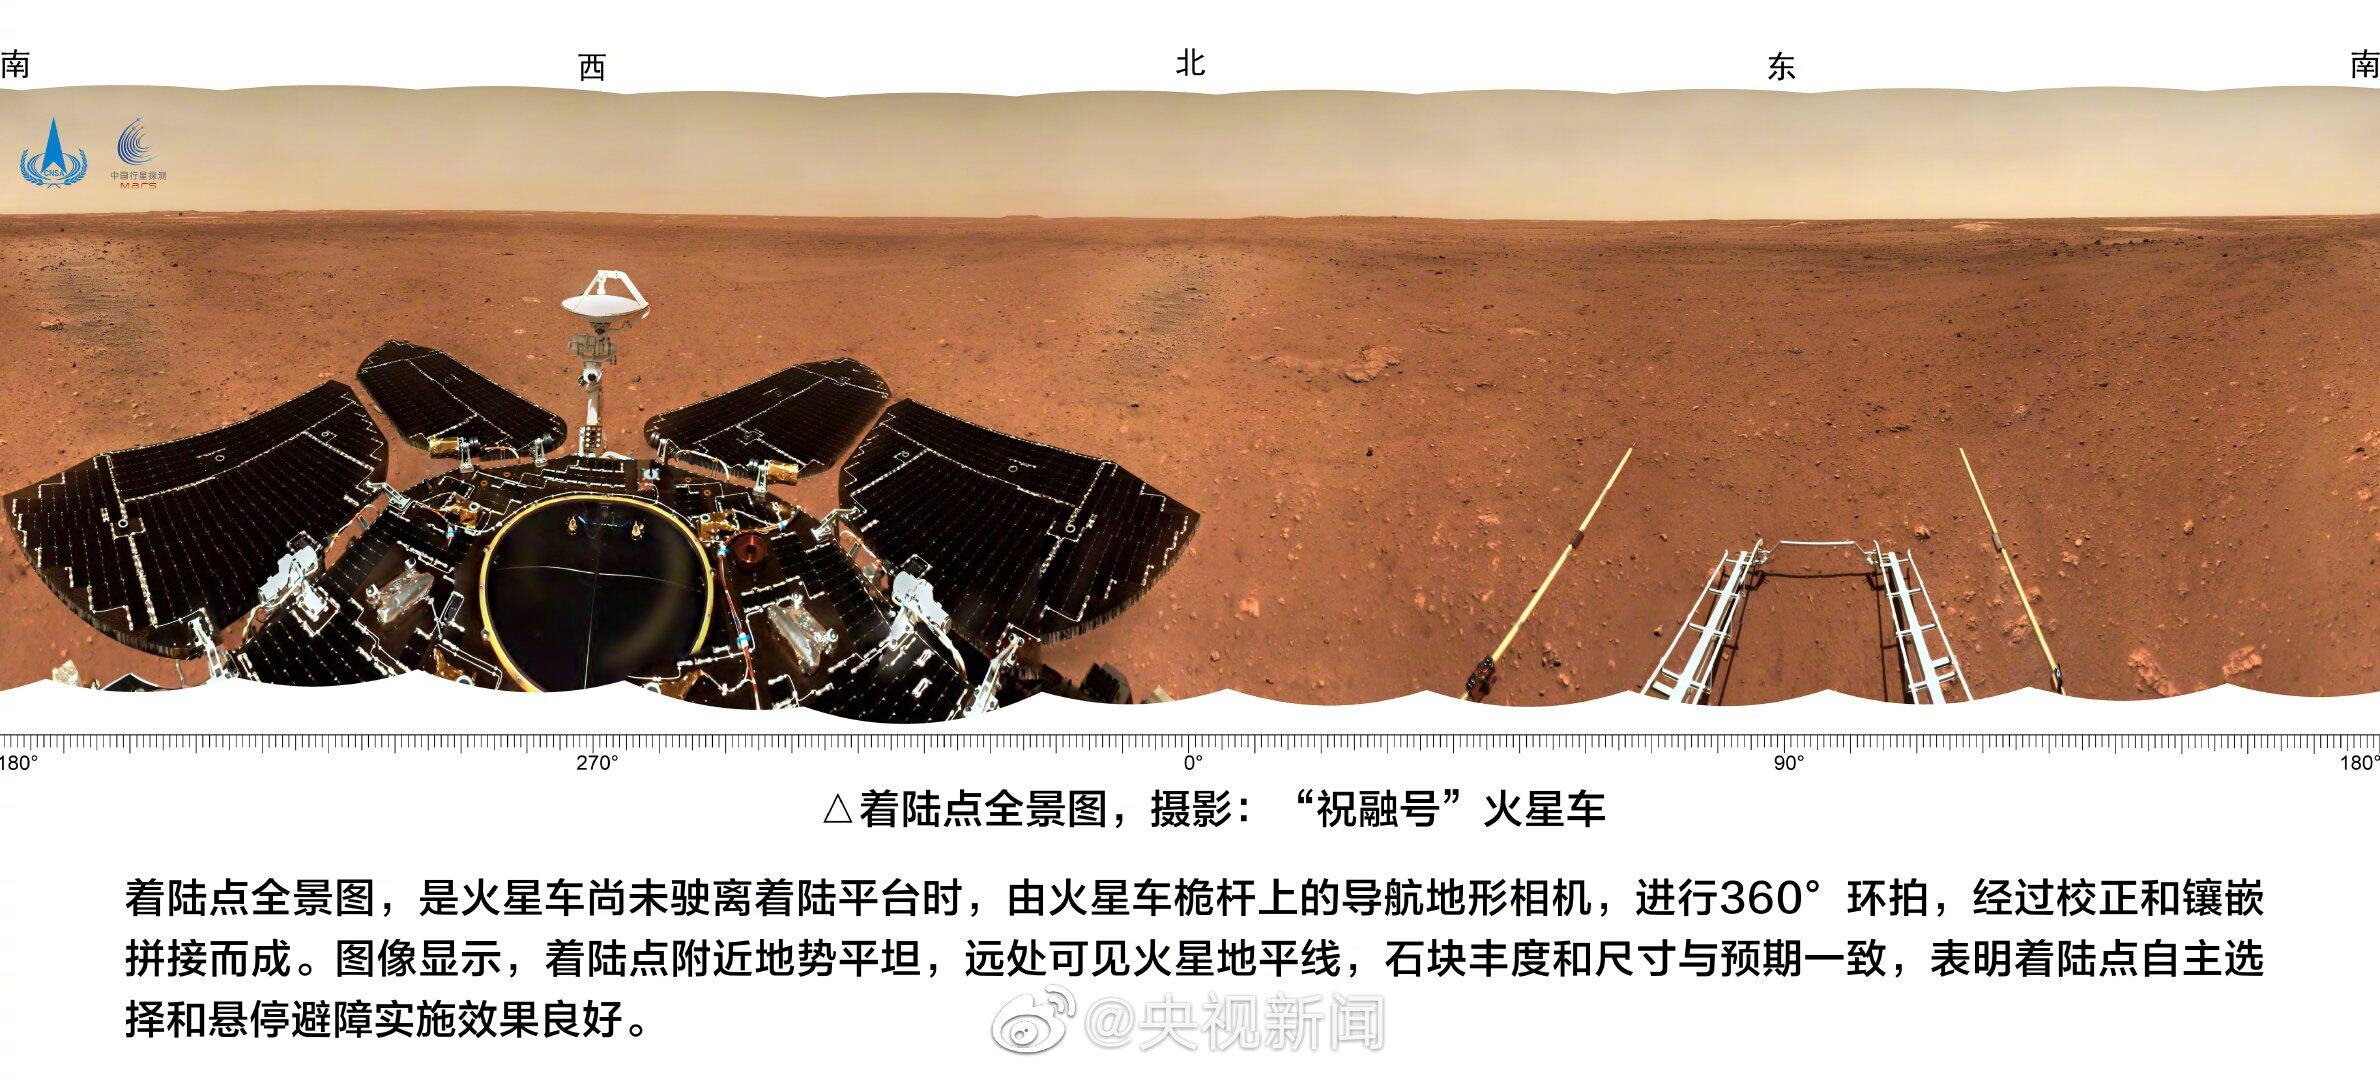 китайский марсоход чжужун где фото прошло полгода